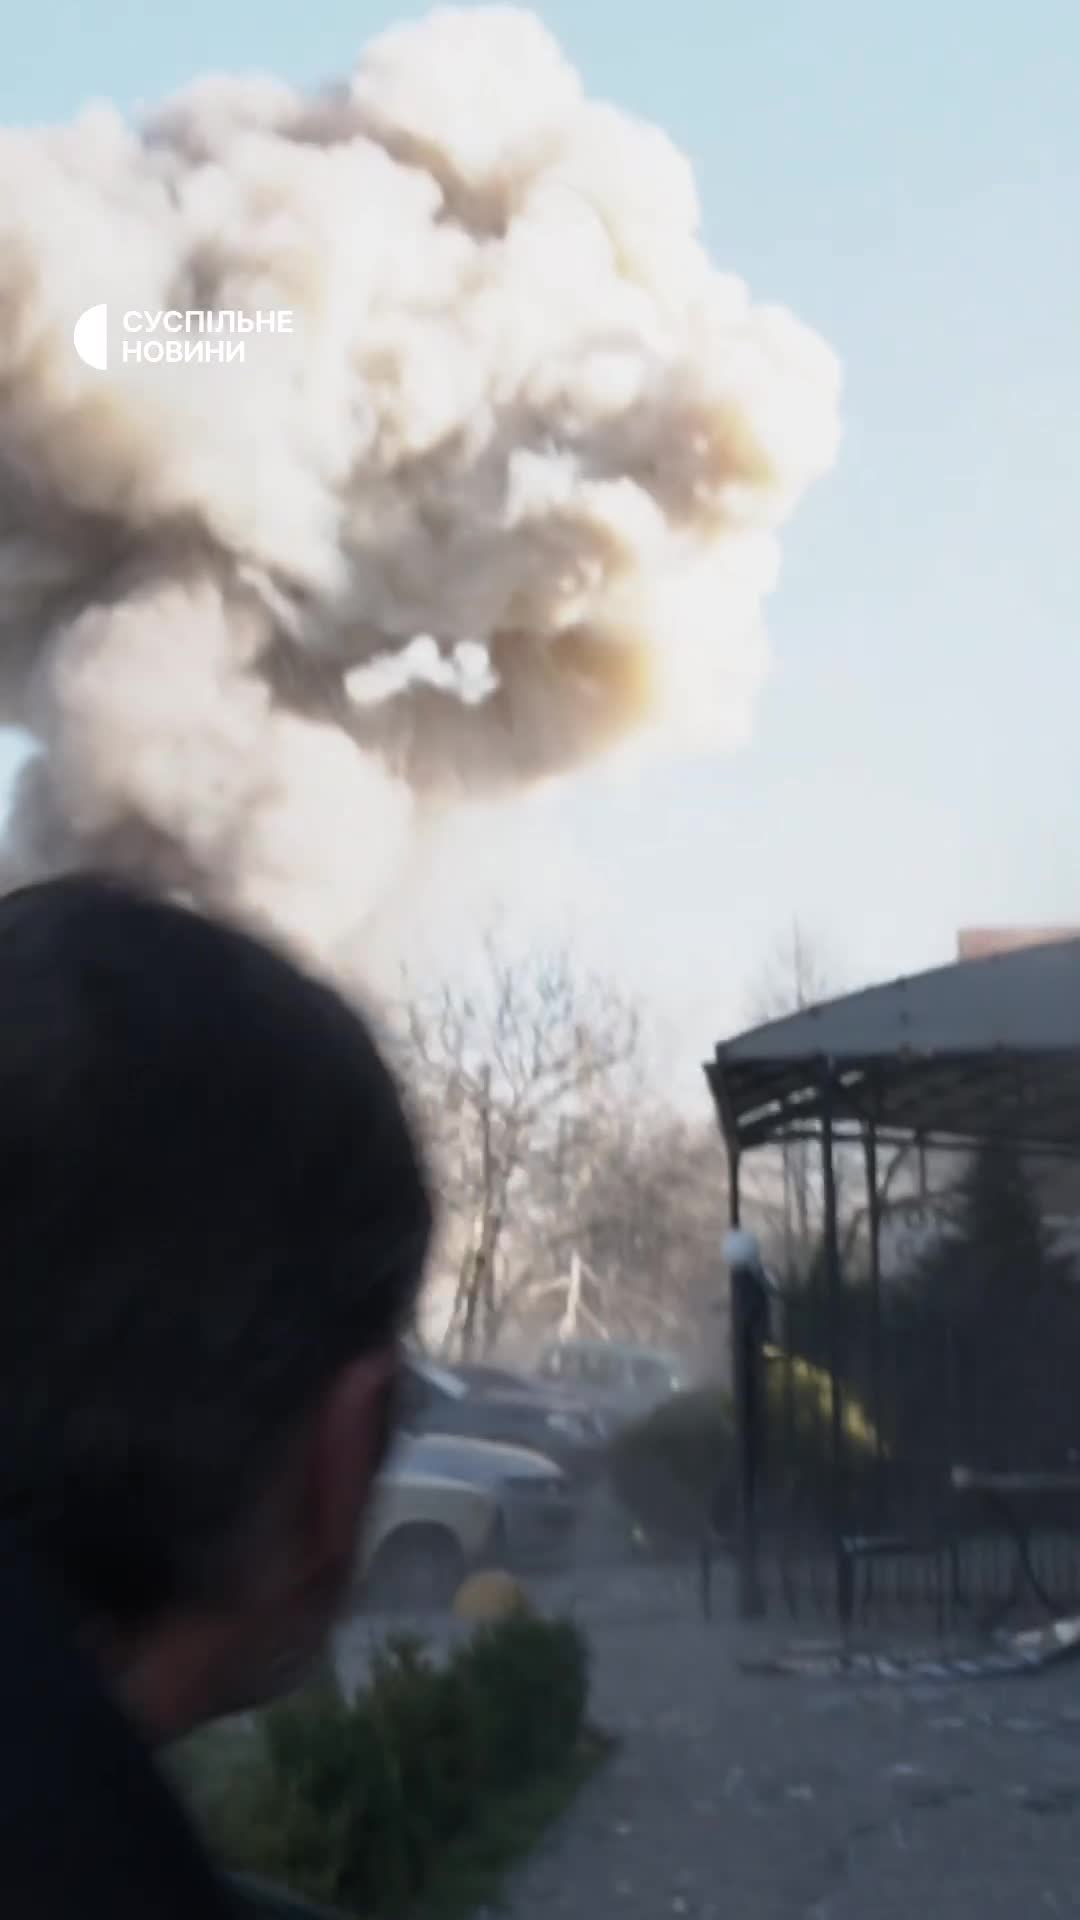 Een dubbele raketaanval in Zaporizja terwijl reddingswerkers, politie en journalisten ter plaatse waren